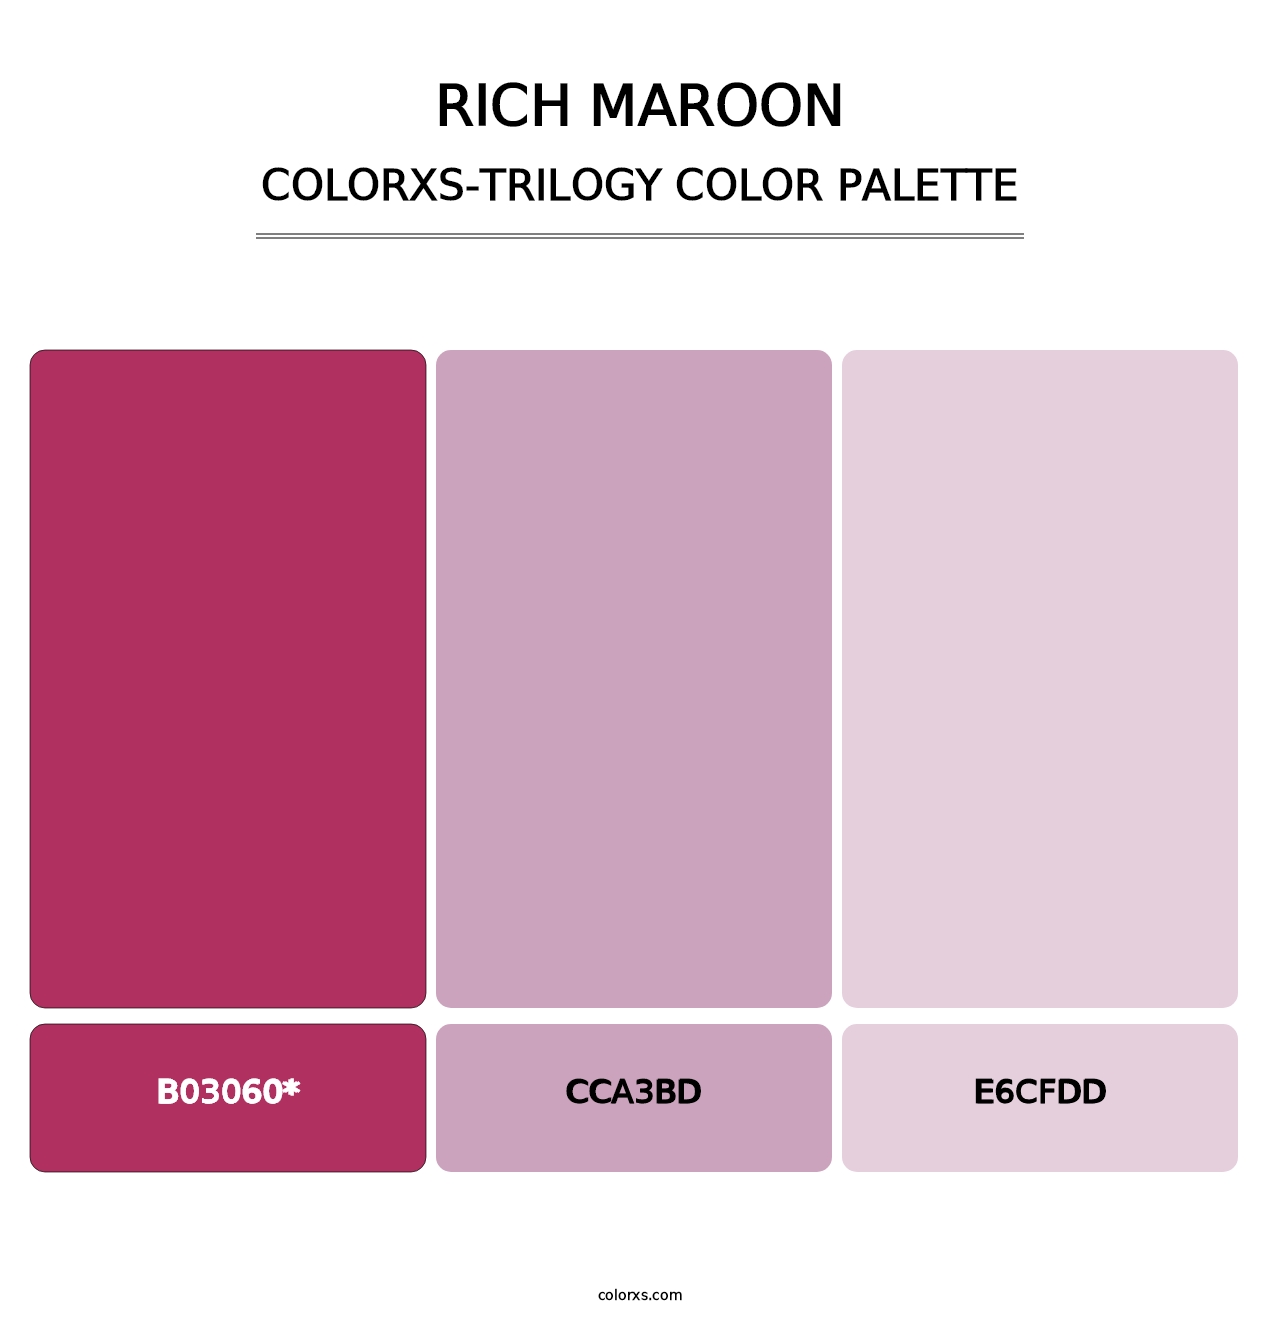 Rich Maroon - Colorxs Trilogy Palette